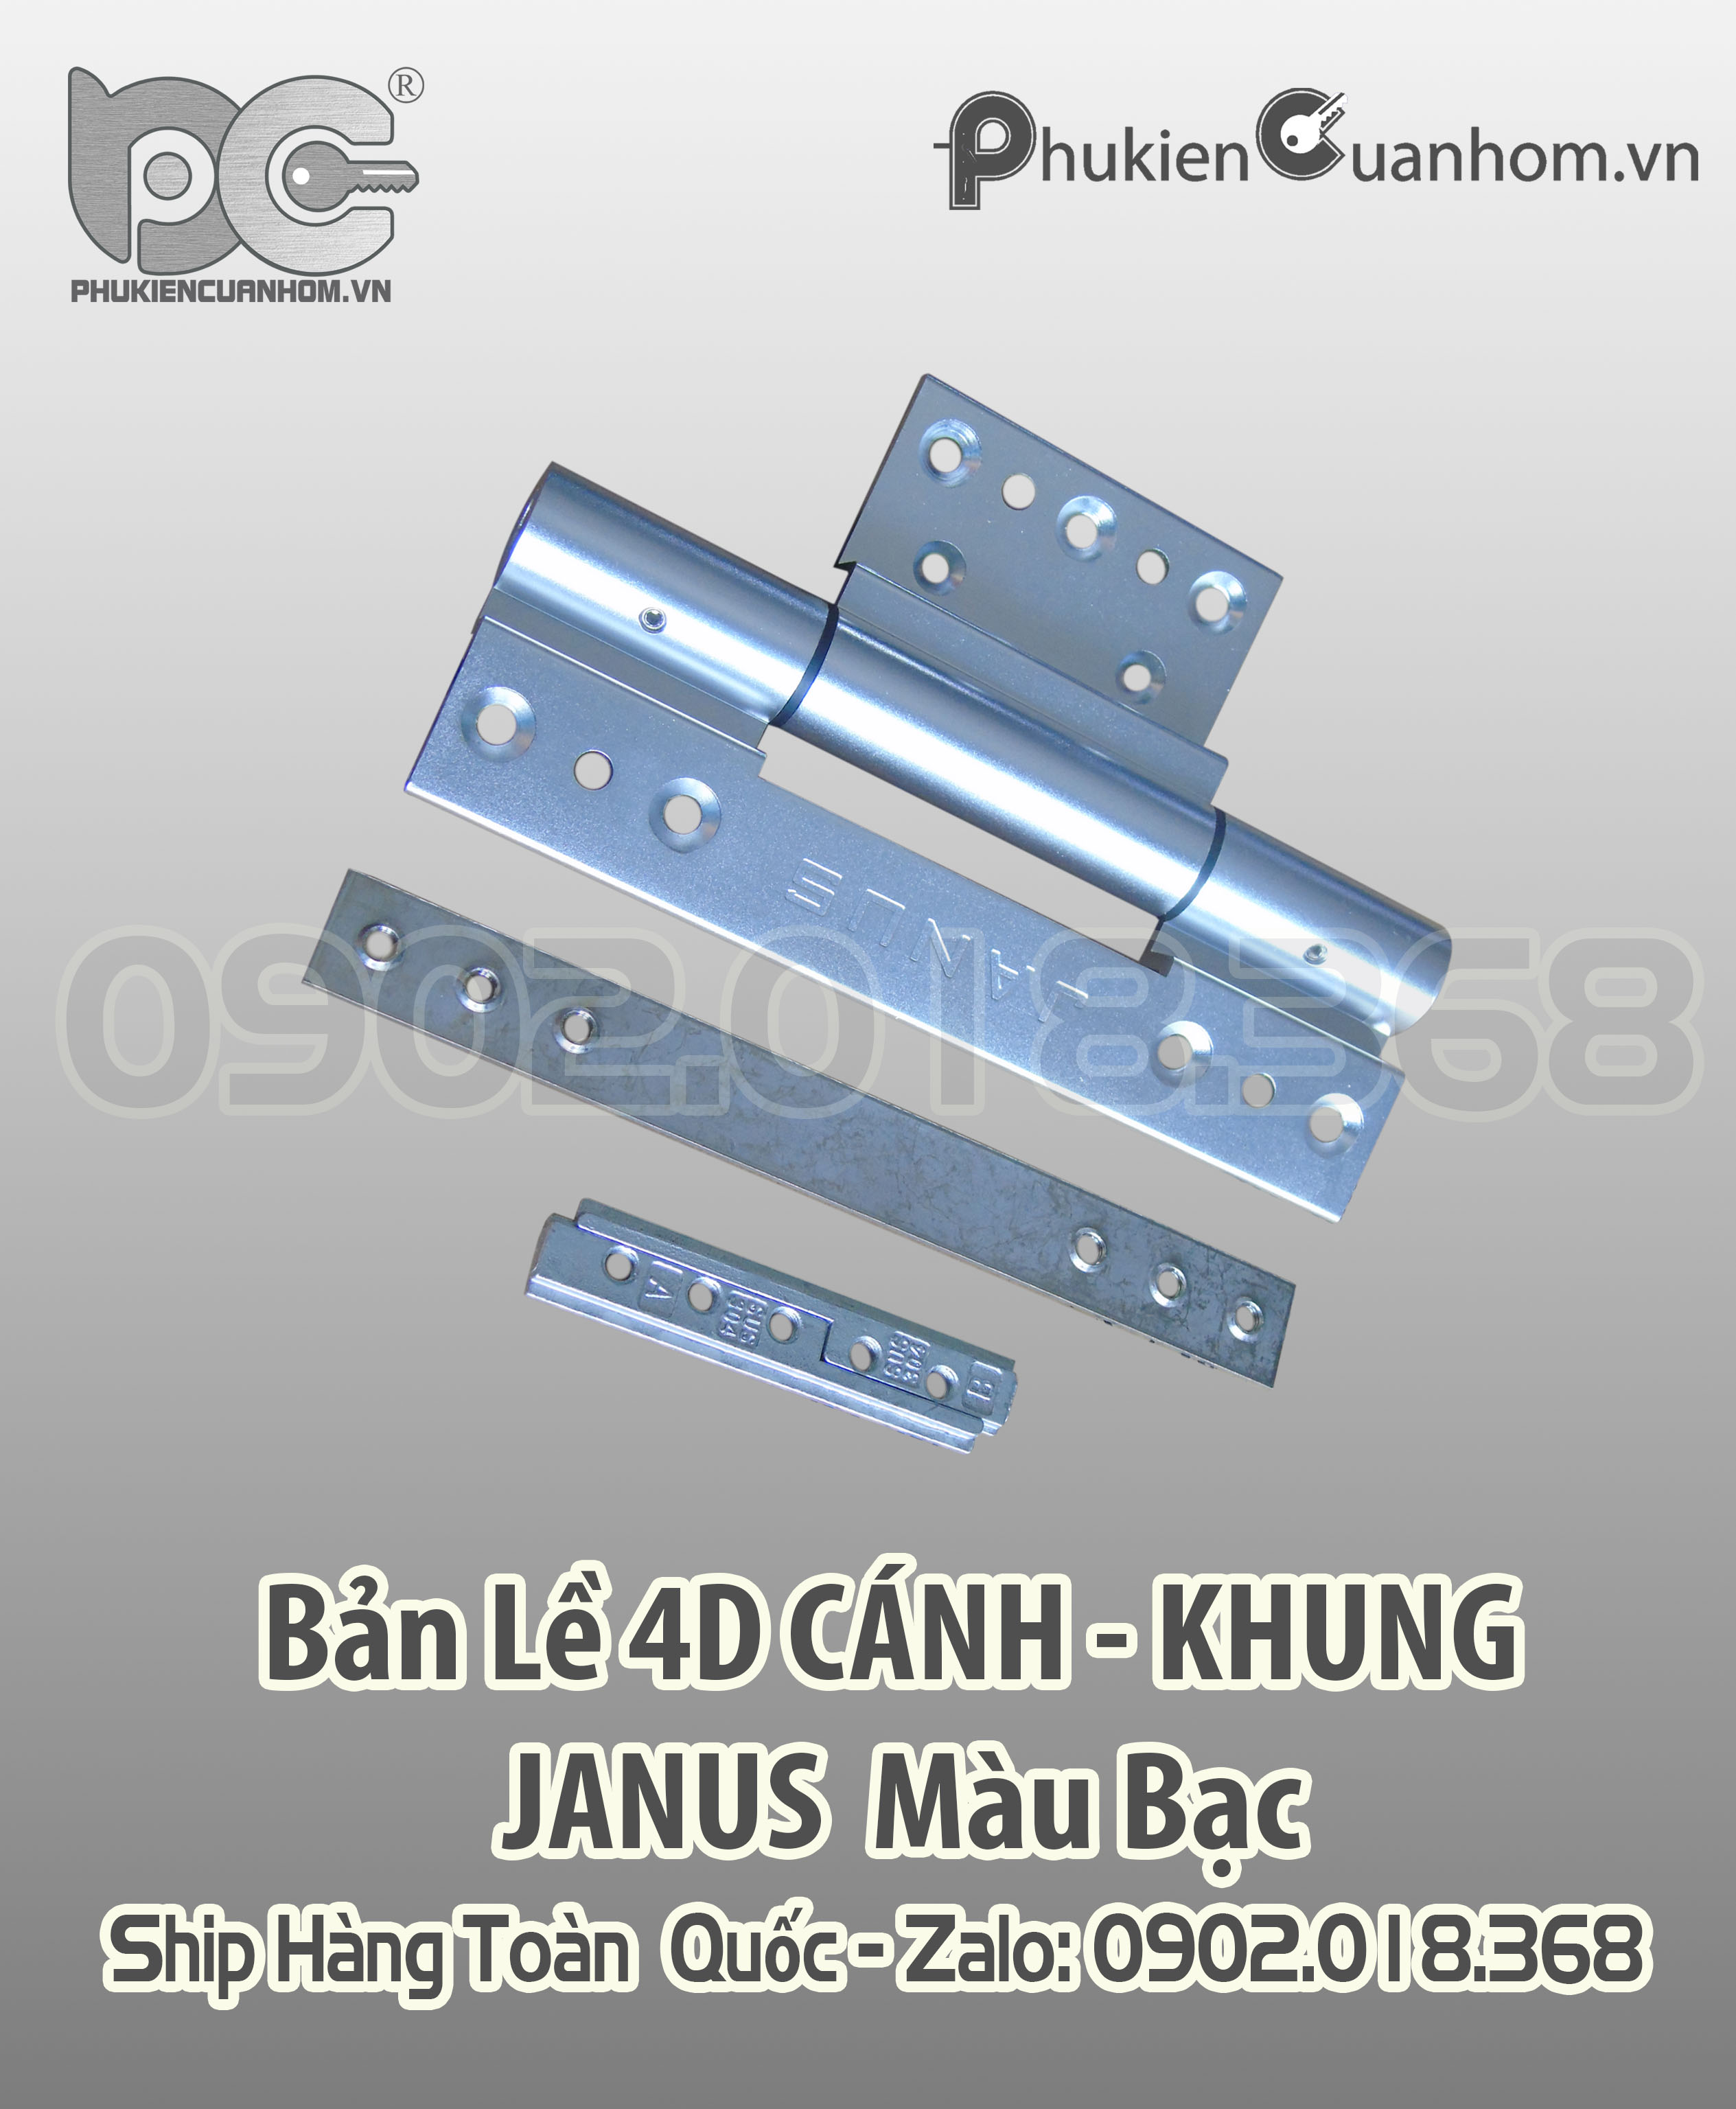 Bản lề 4D cánh khung cao cấp Xingfa 55 hiệu Janus màu bạc 